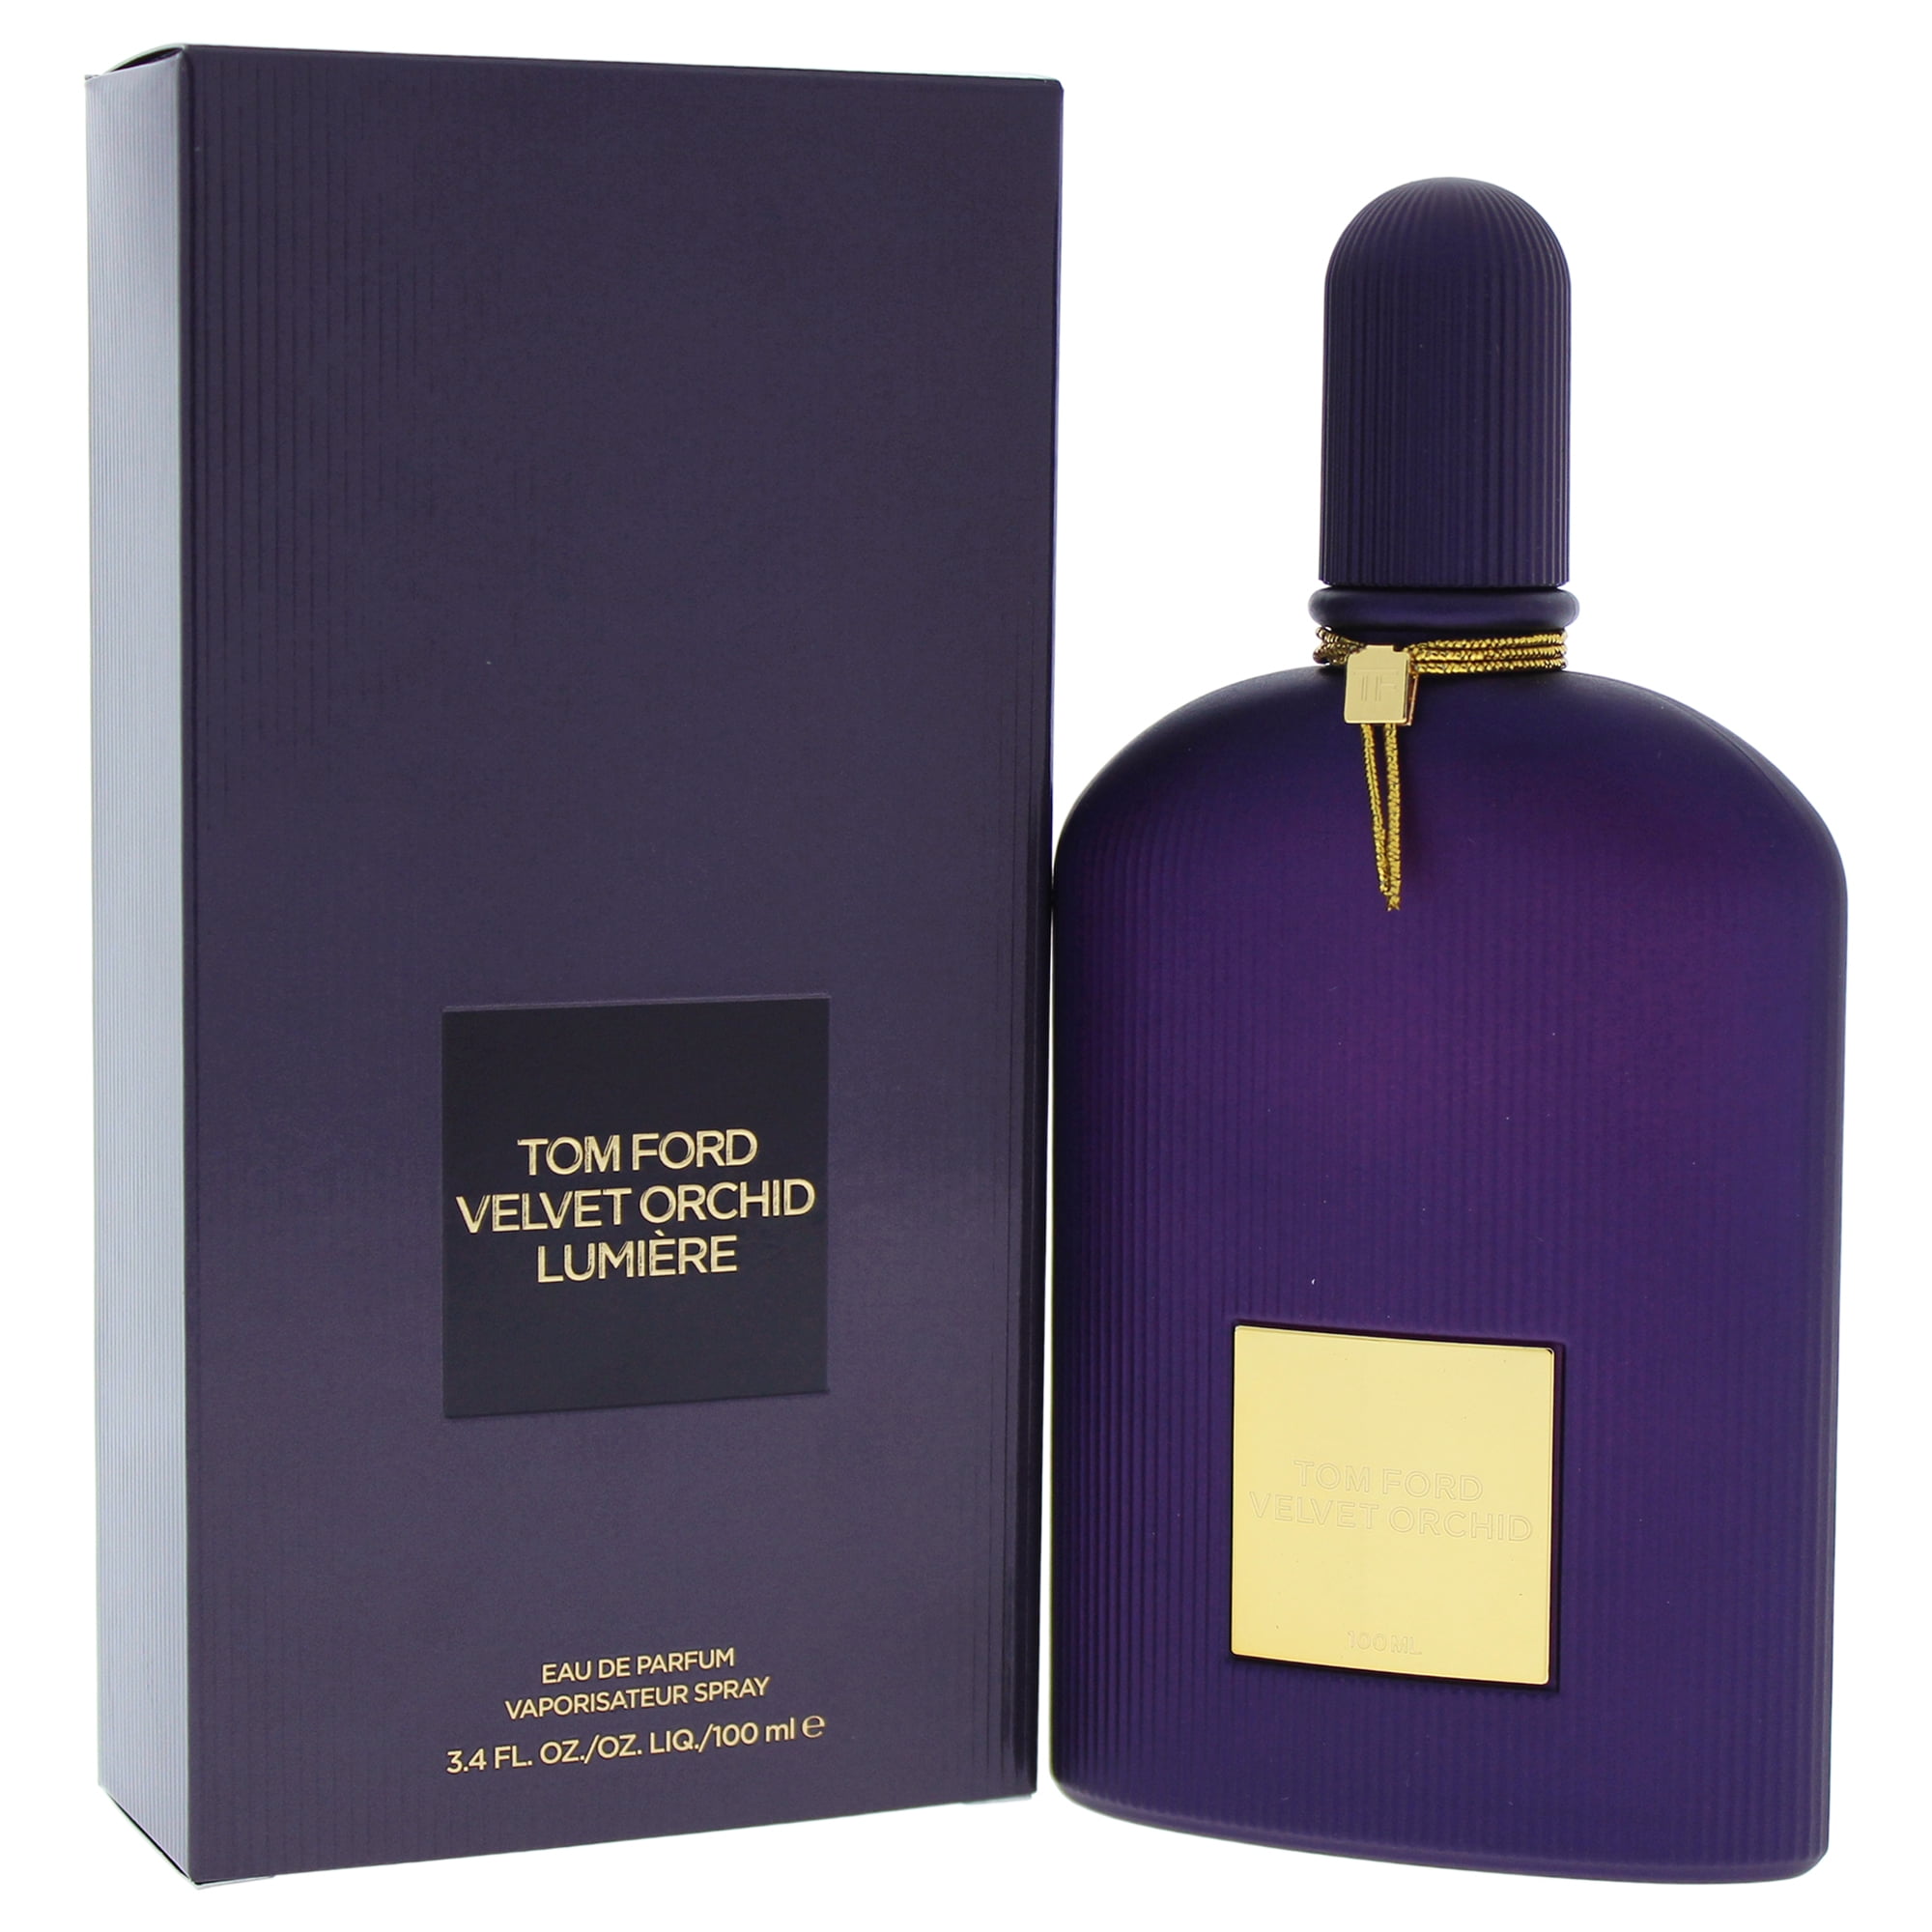 Tom Ford - Tom Ford Velvet Orchid Eau de Parfum, Perfume for Women, 3.4